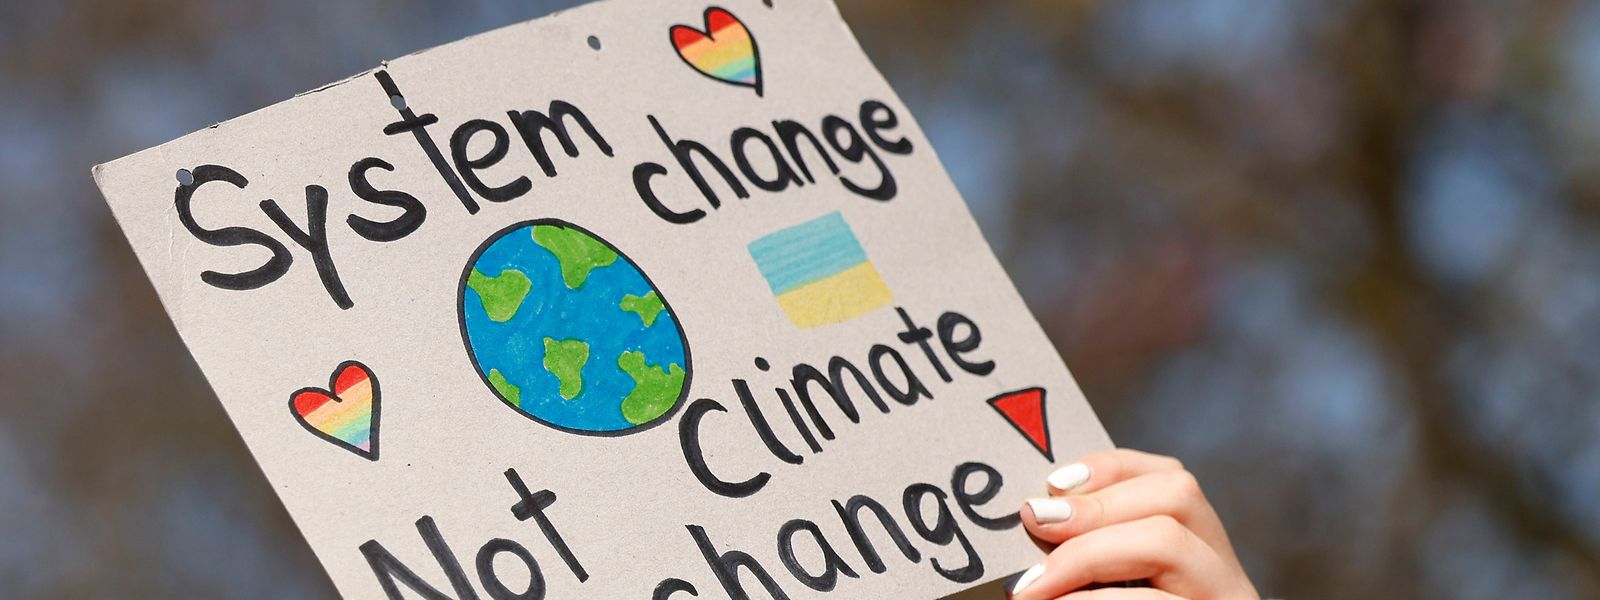 «System change Not climate change», une pancarte brandie pendant la grève du climat Fridays for Future à Coblence en Allemagne.